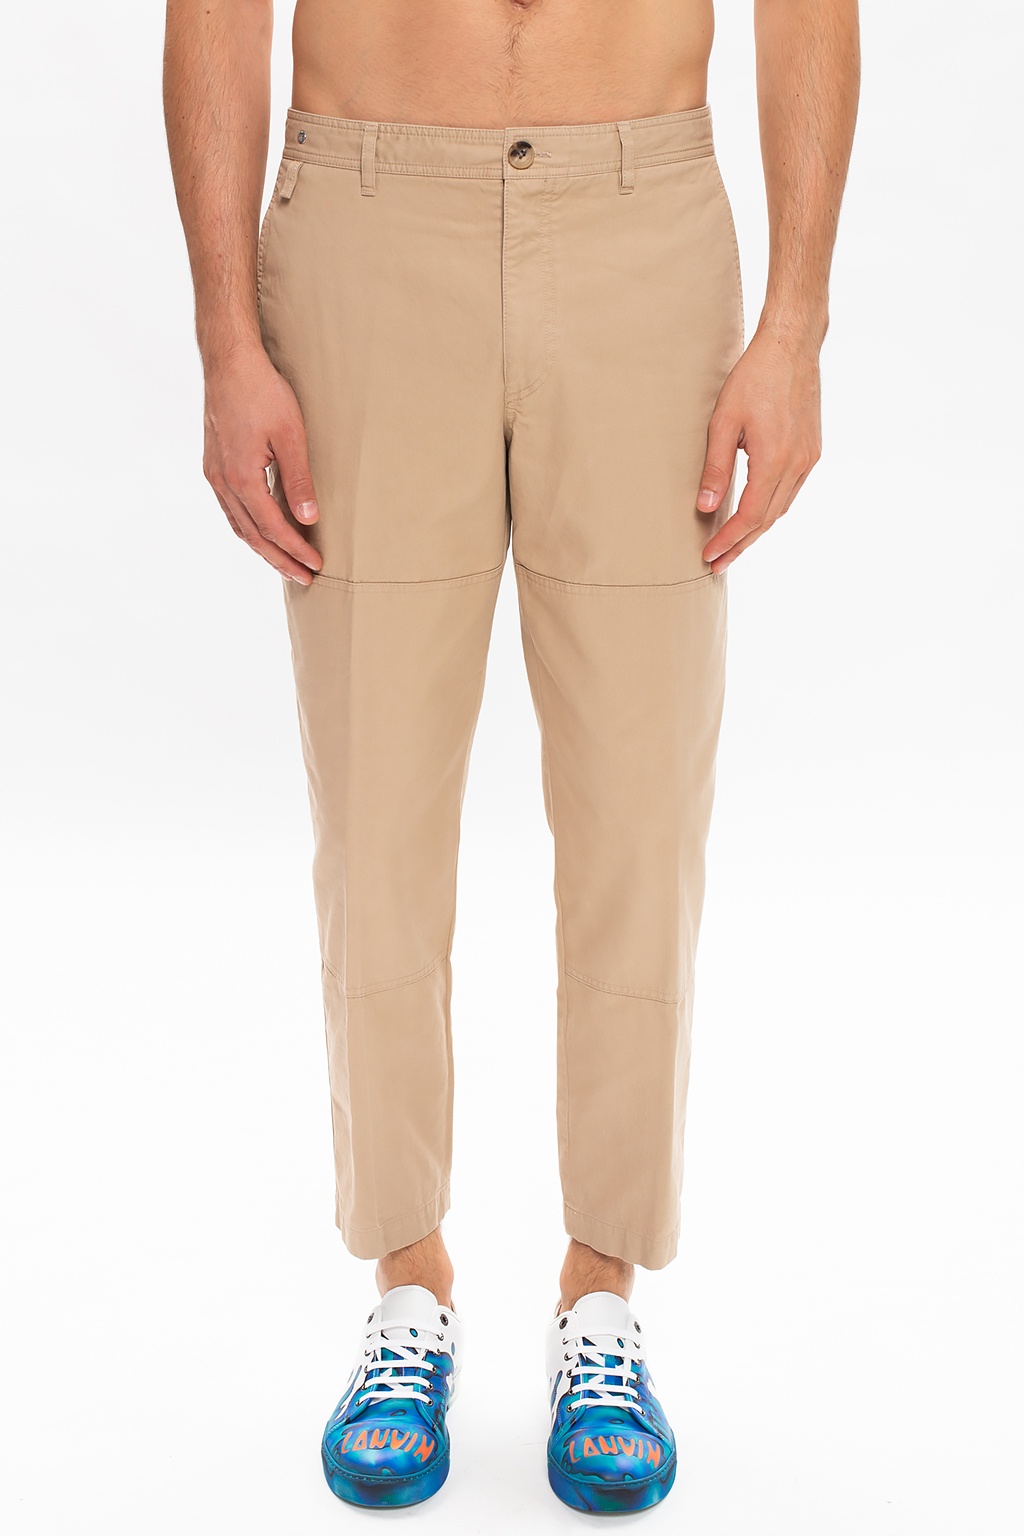 Lanvin Cotton trousers | Men's Clothing | IetpShops